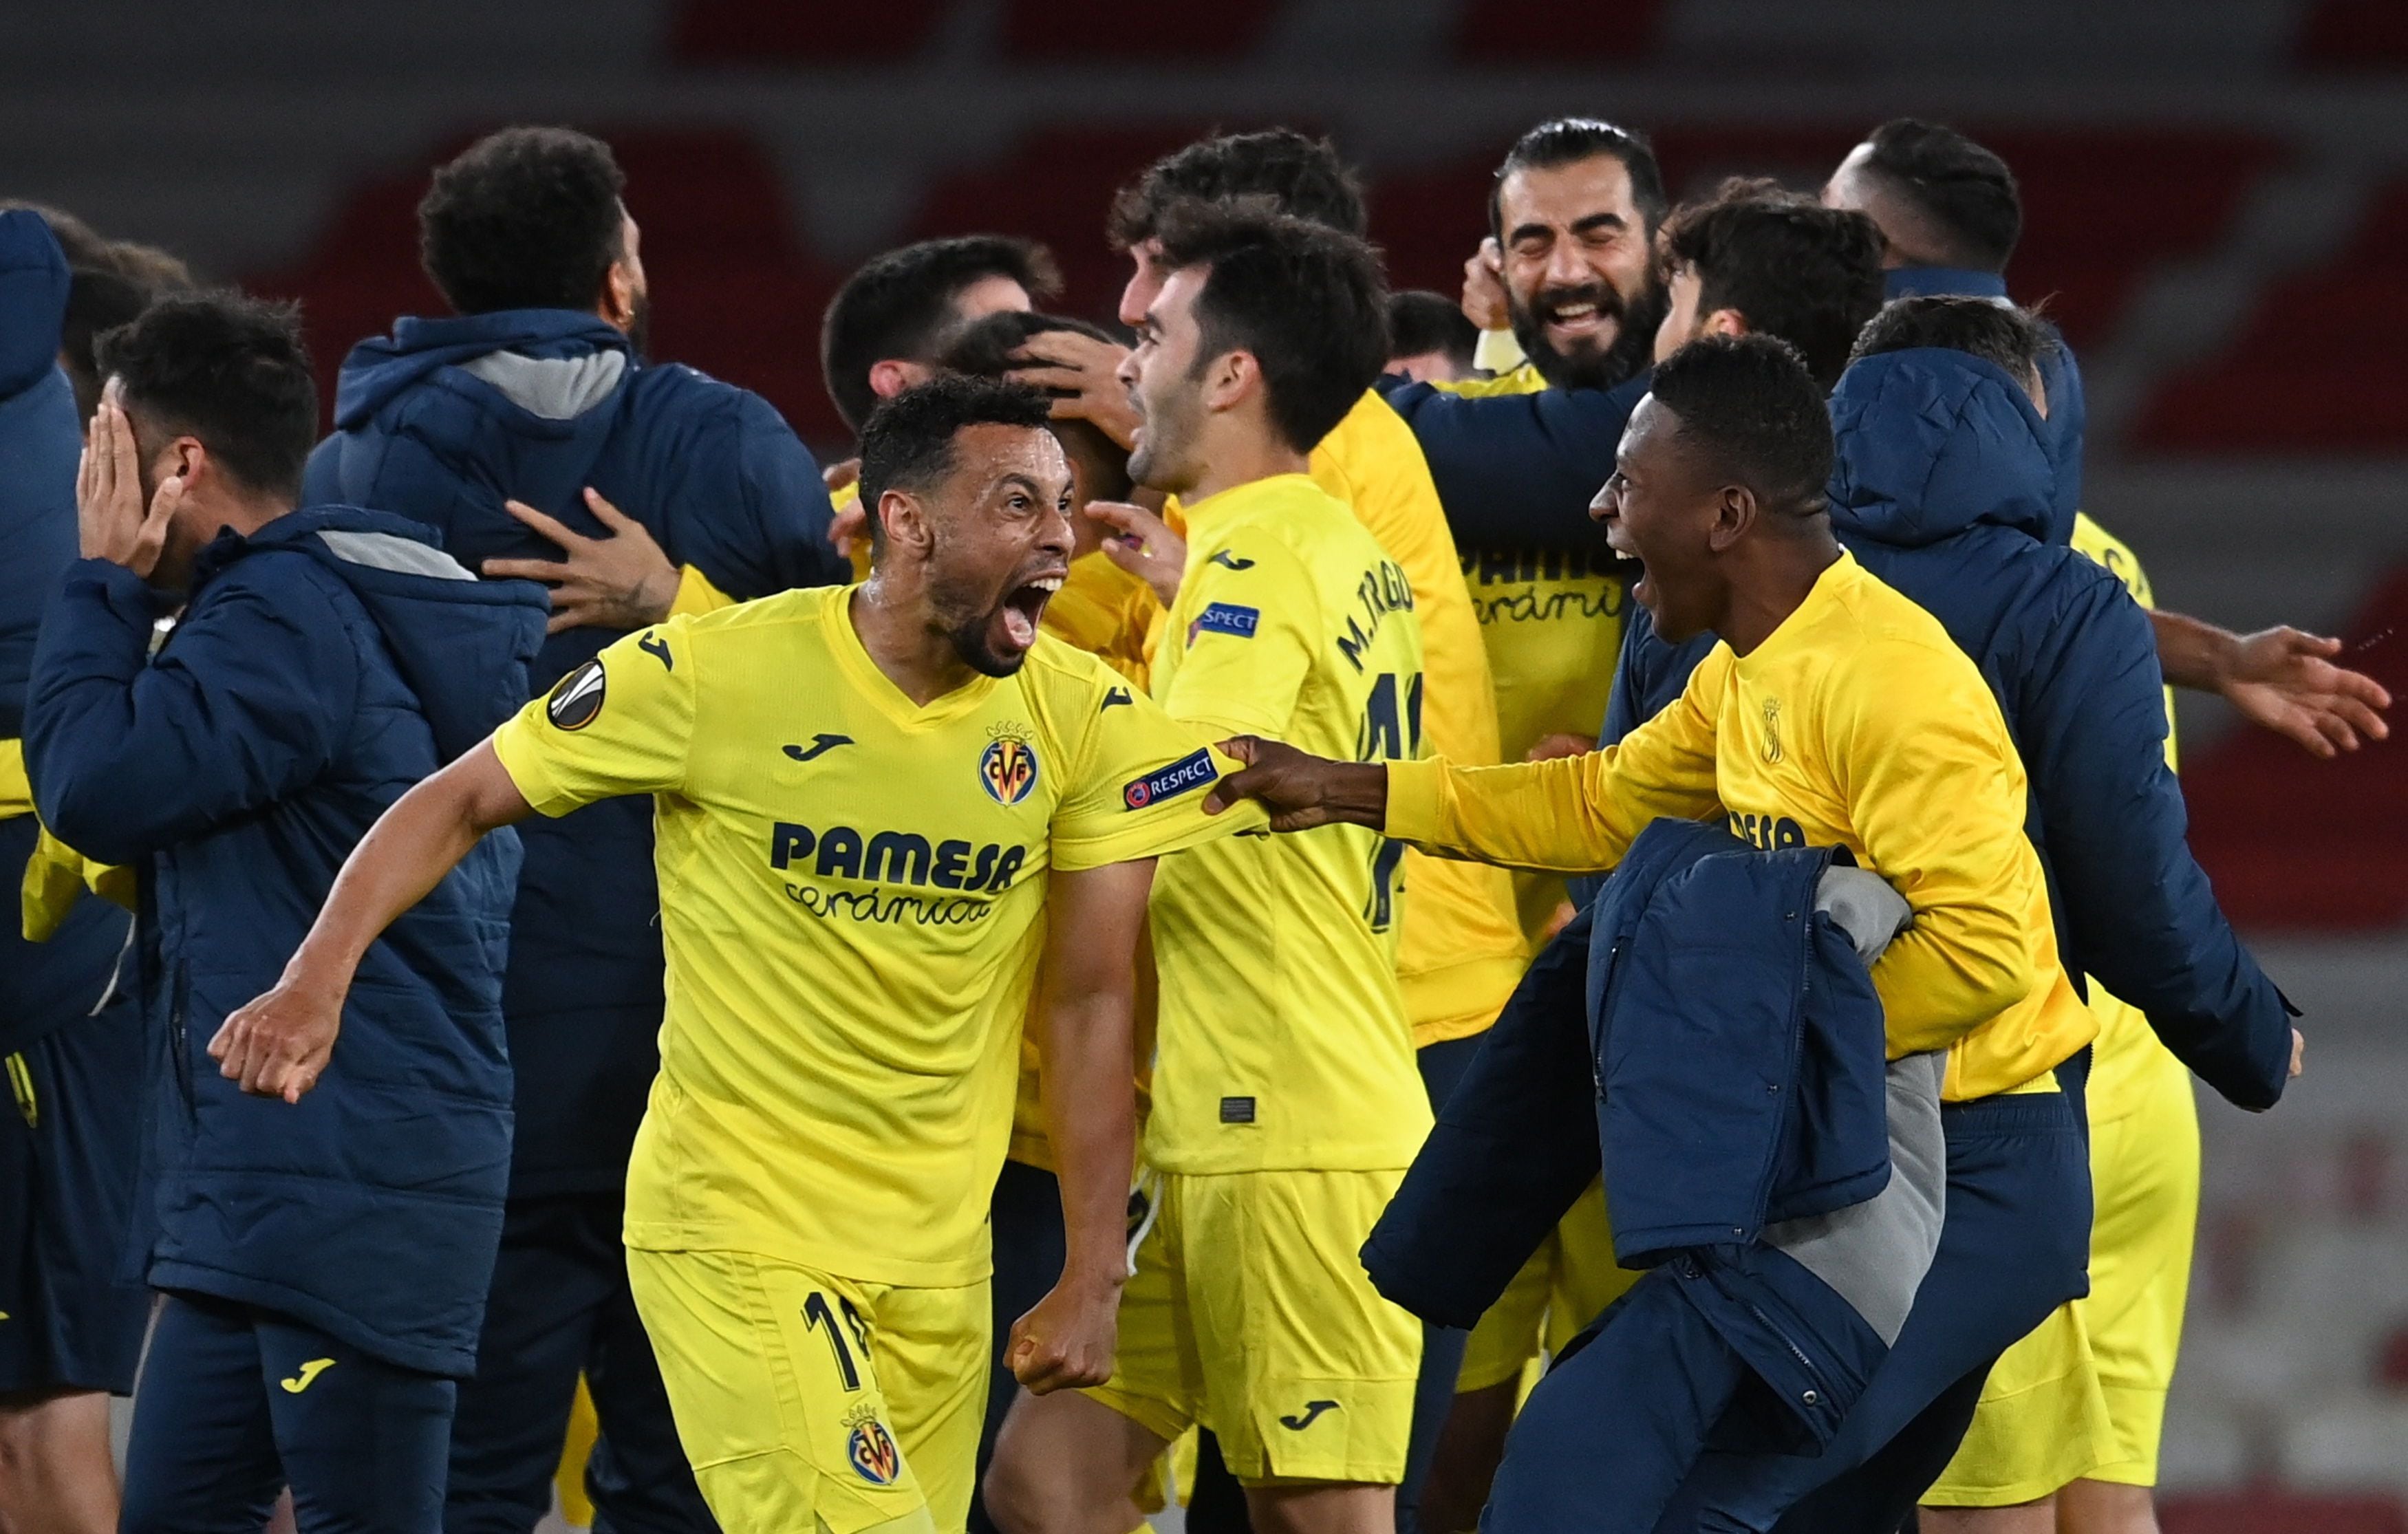 El Villarreal, de Pervis Estupiñán, jugará contra el Manchester United su primera final de Europa